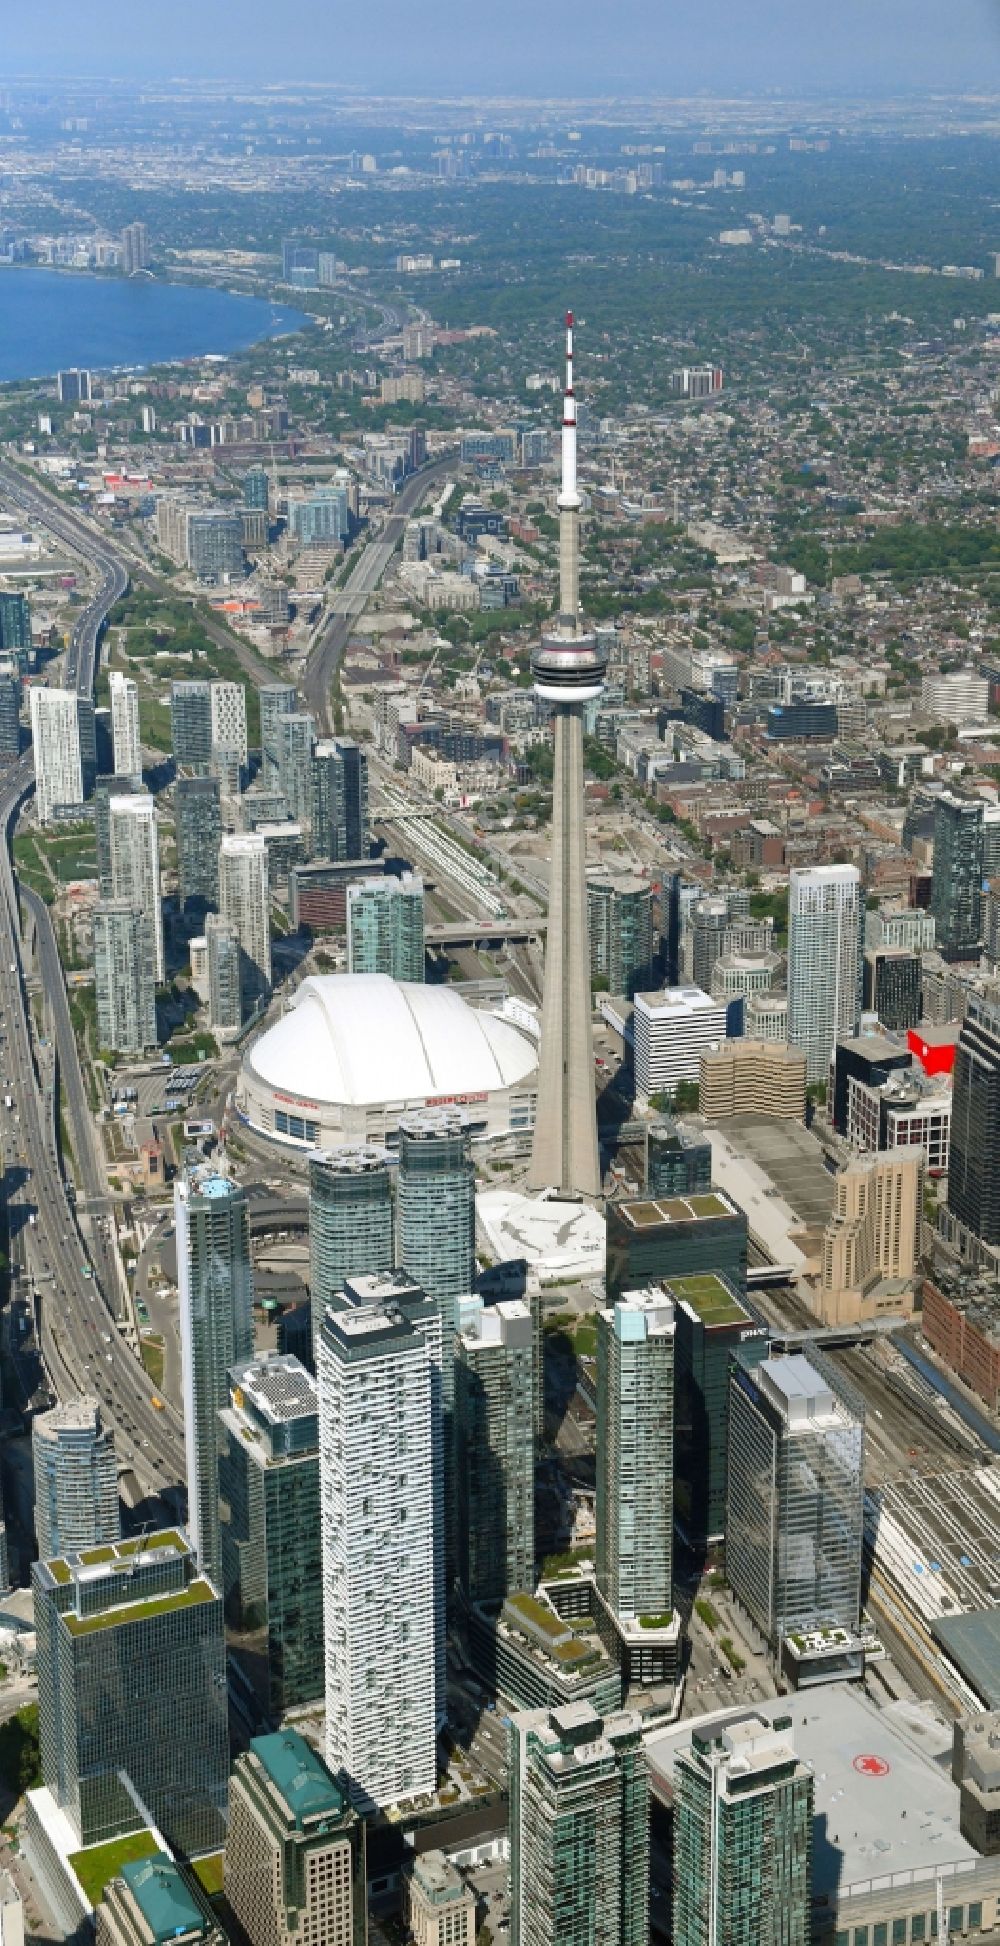 Luftbild Toronto - Sportstätten-Gelände der Arena des Stadion Rogers Centre am Blue Jays Way im Ortsteil Old Toronto in Toronto in Ontario, Kanada